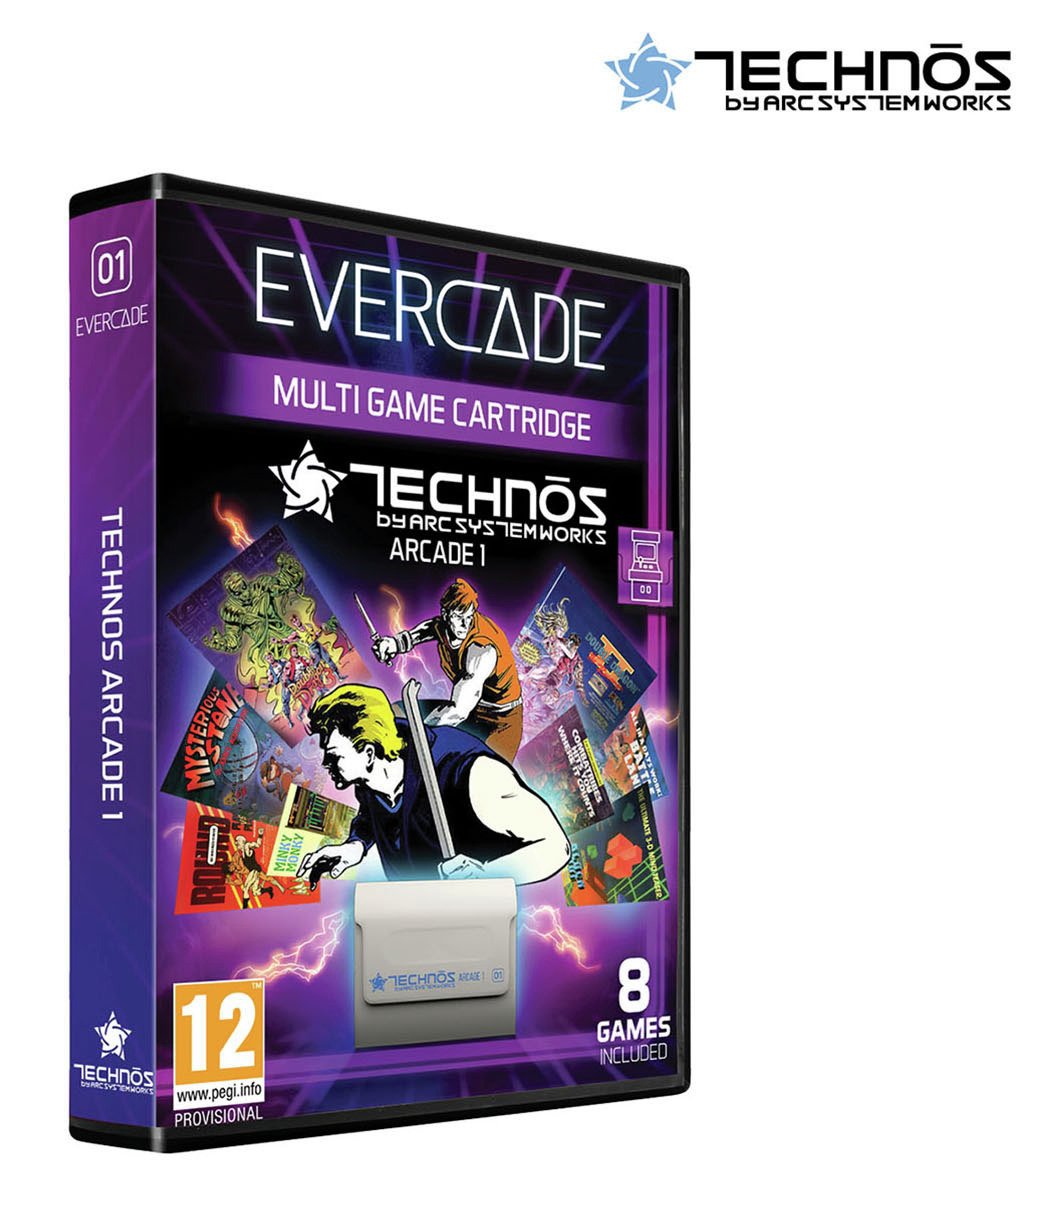 Evercade Cartridge 01: Technos Arcade 1